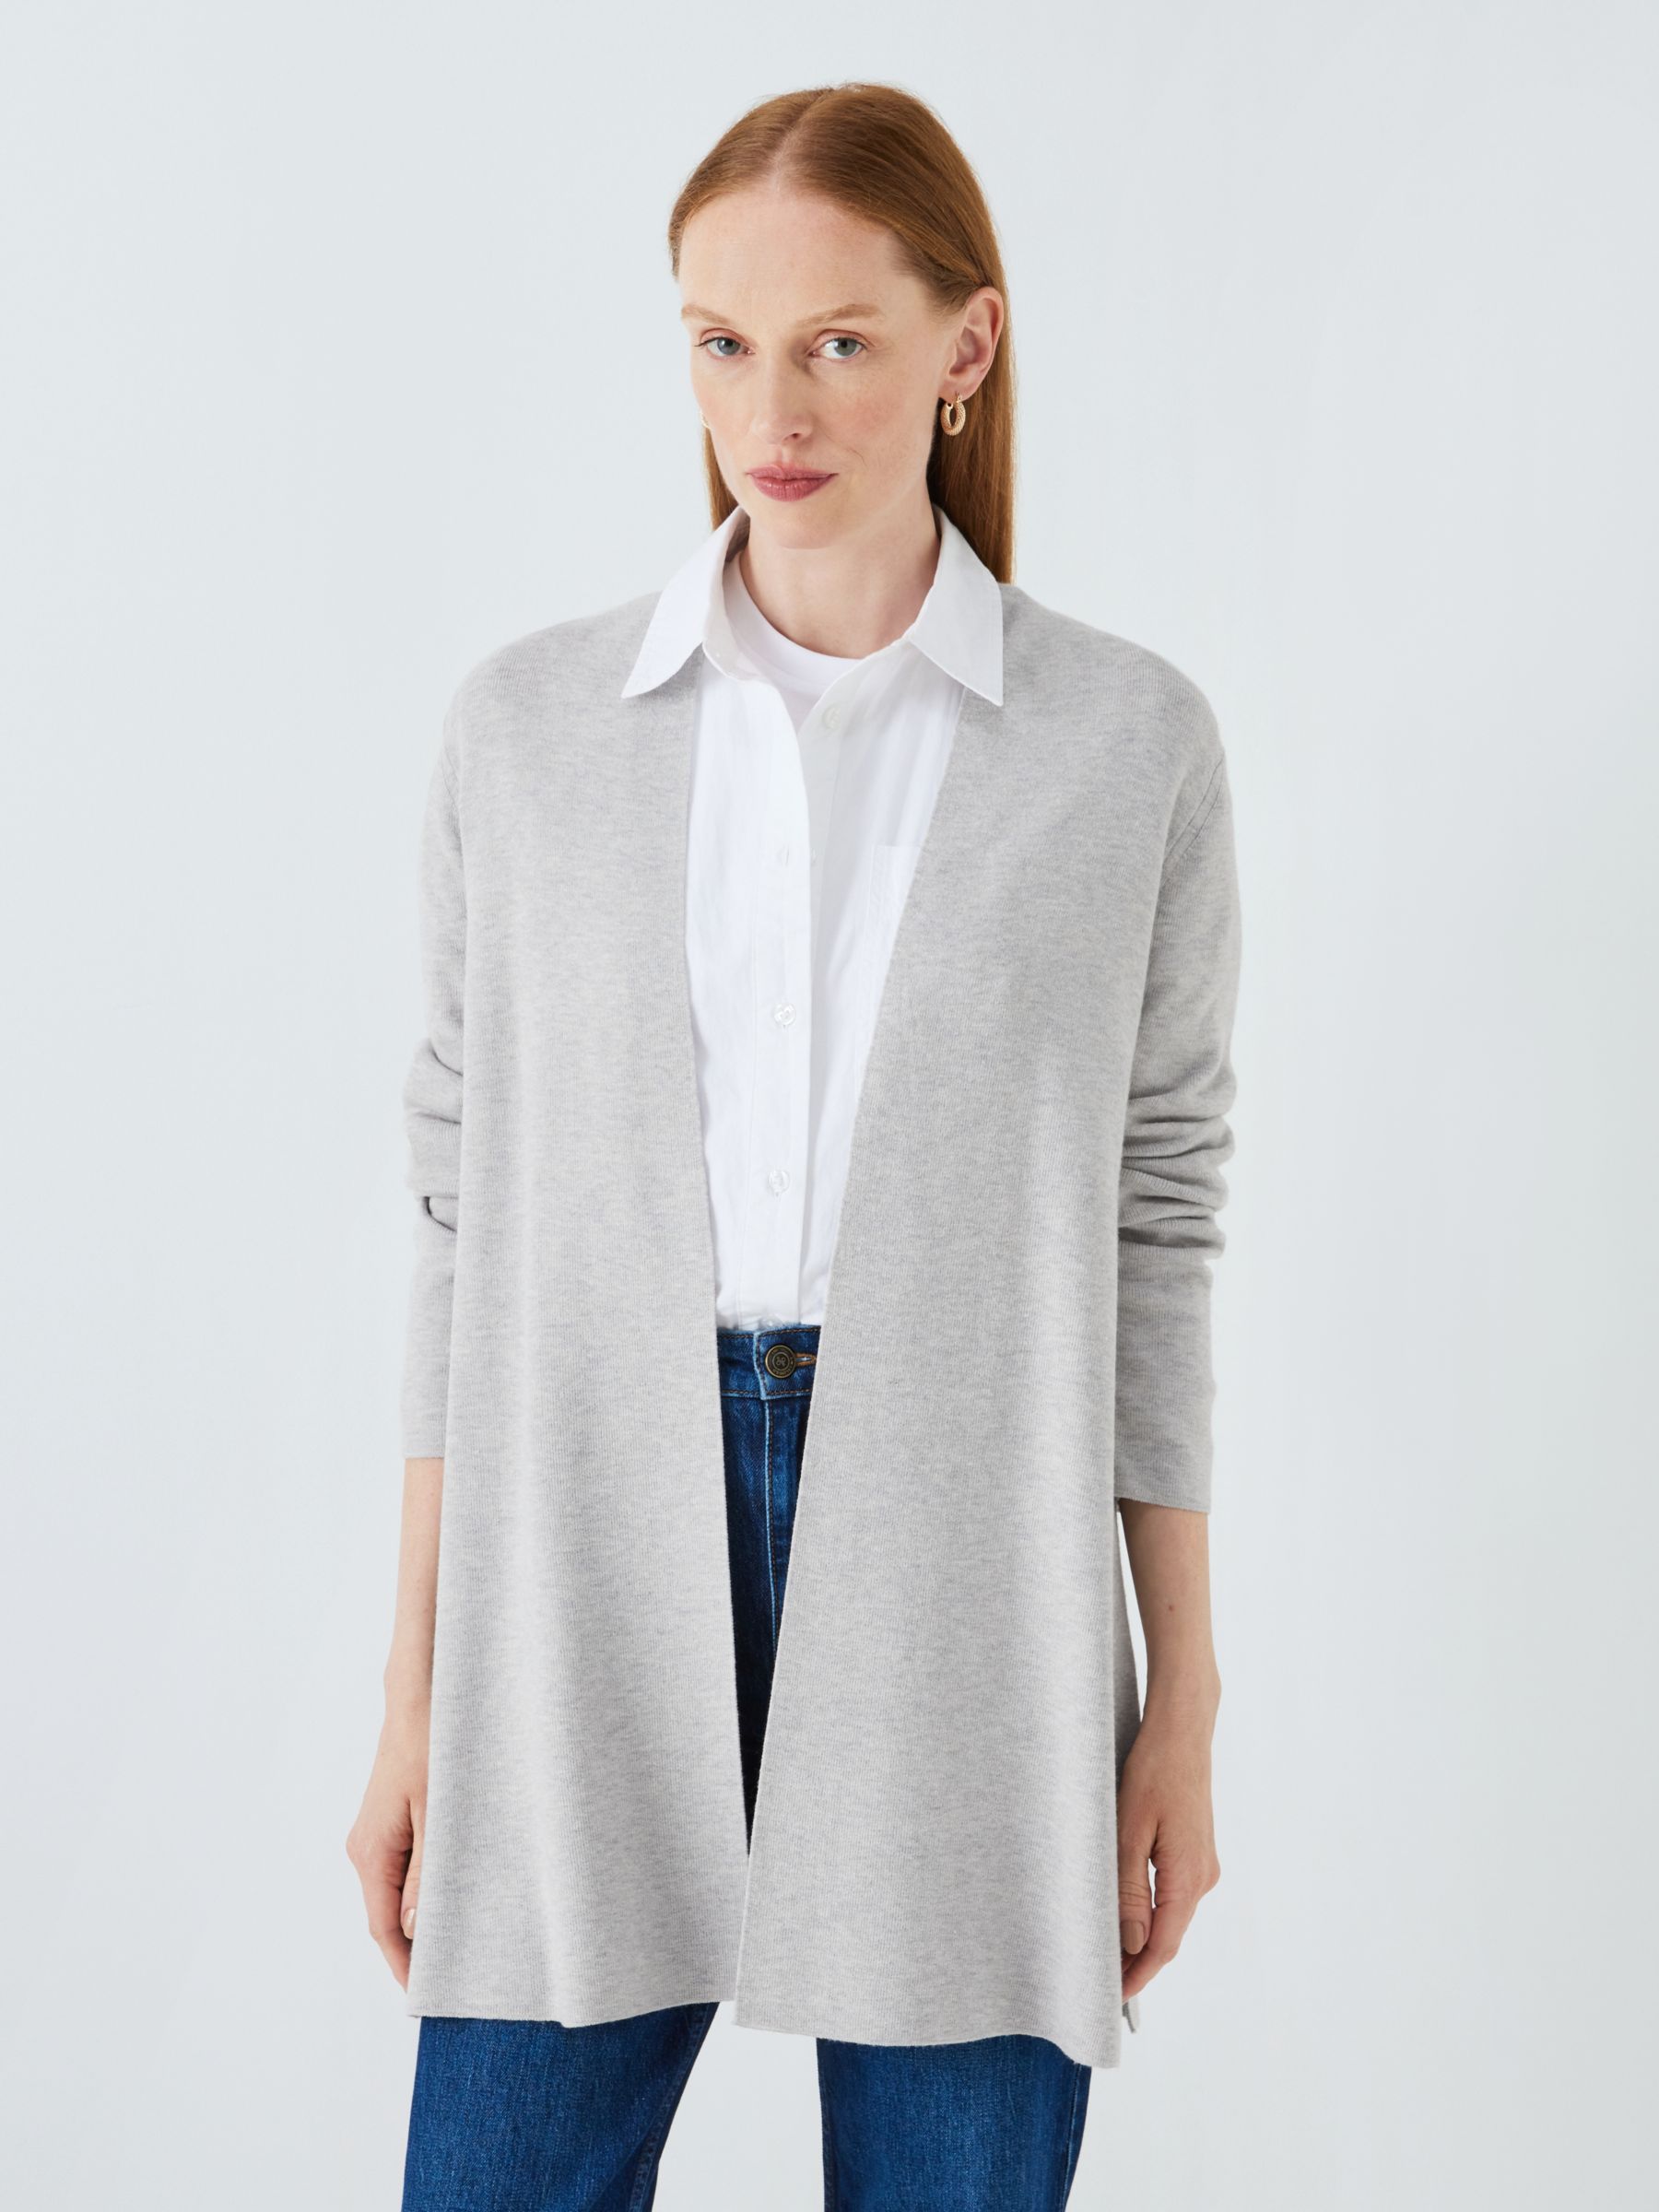 Light Grey Marle Cotton Wool Waterfall Cardigan - WOMEN Knitwear